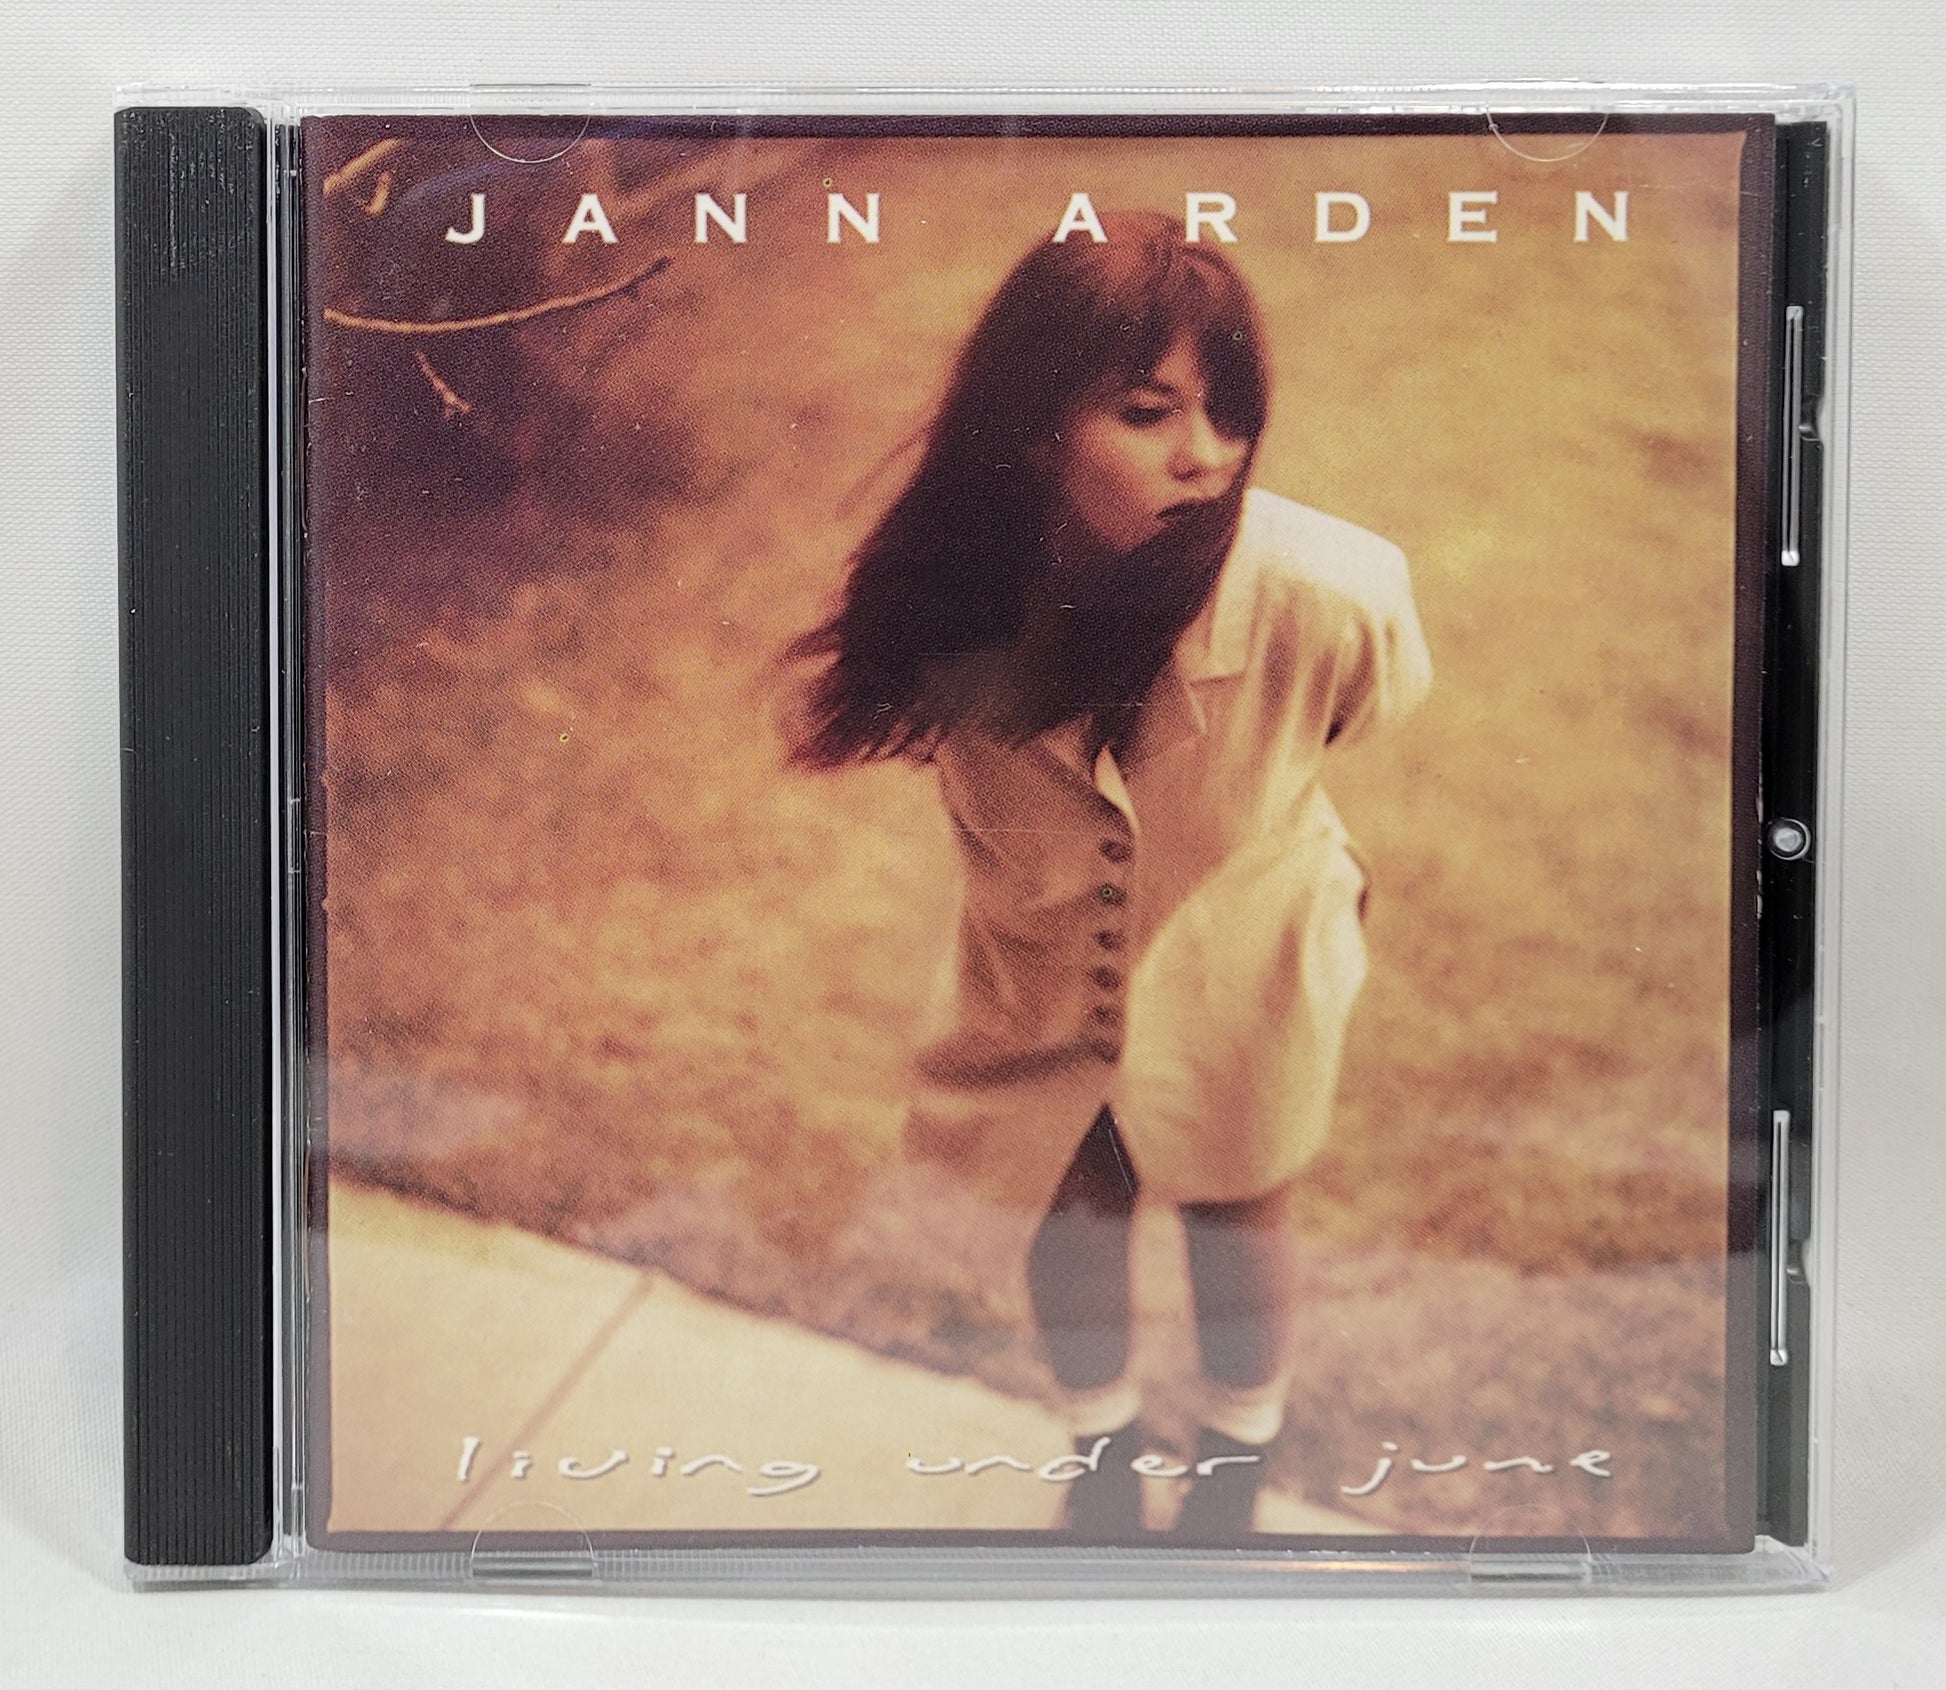 Jann Arden - Living Under June [1994 Used CD] [B]